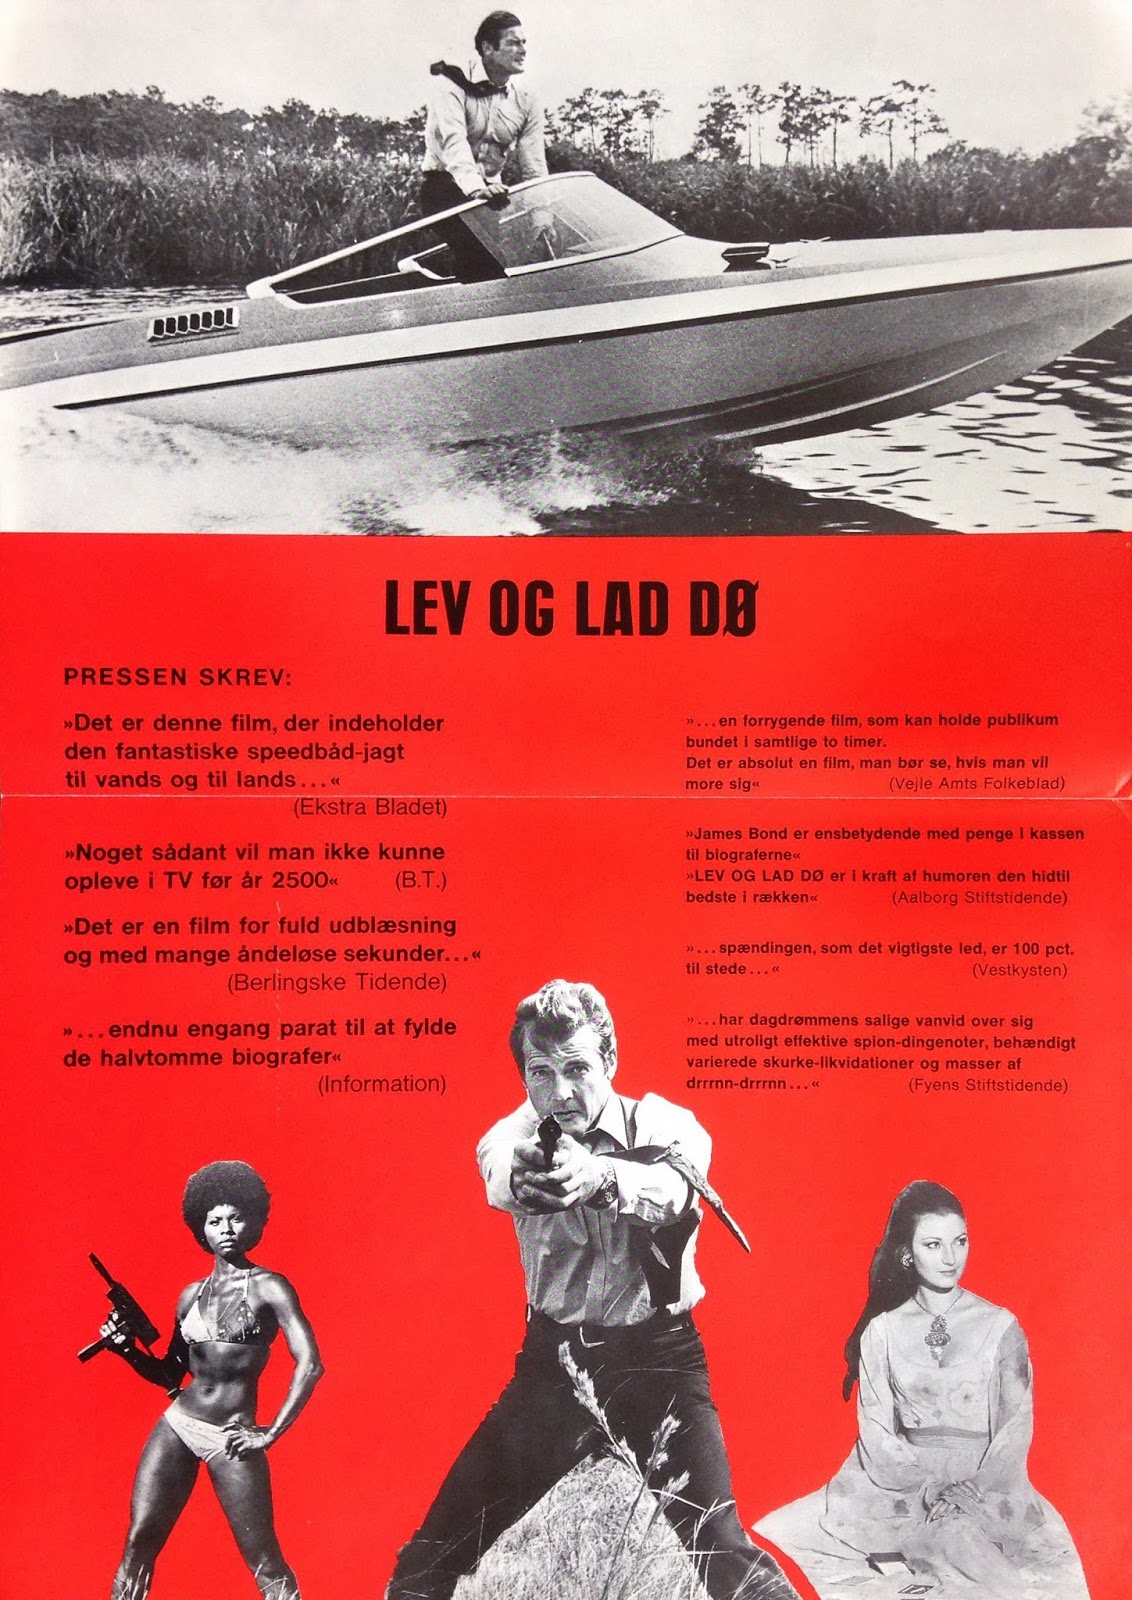 08-Lev-Og-Lad-D%C3%B8-version-3-C.jpg